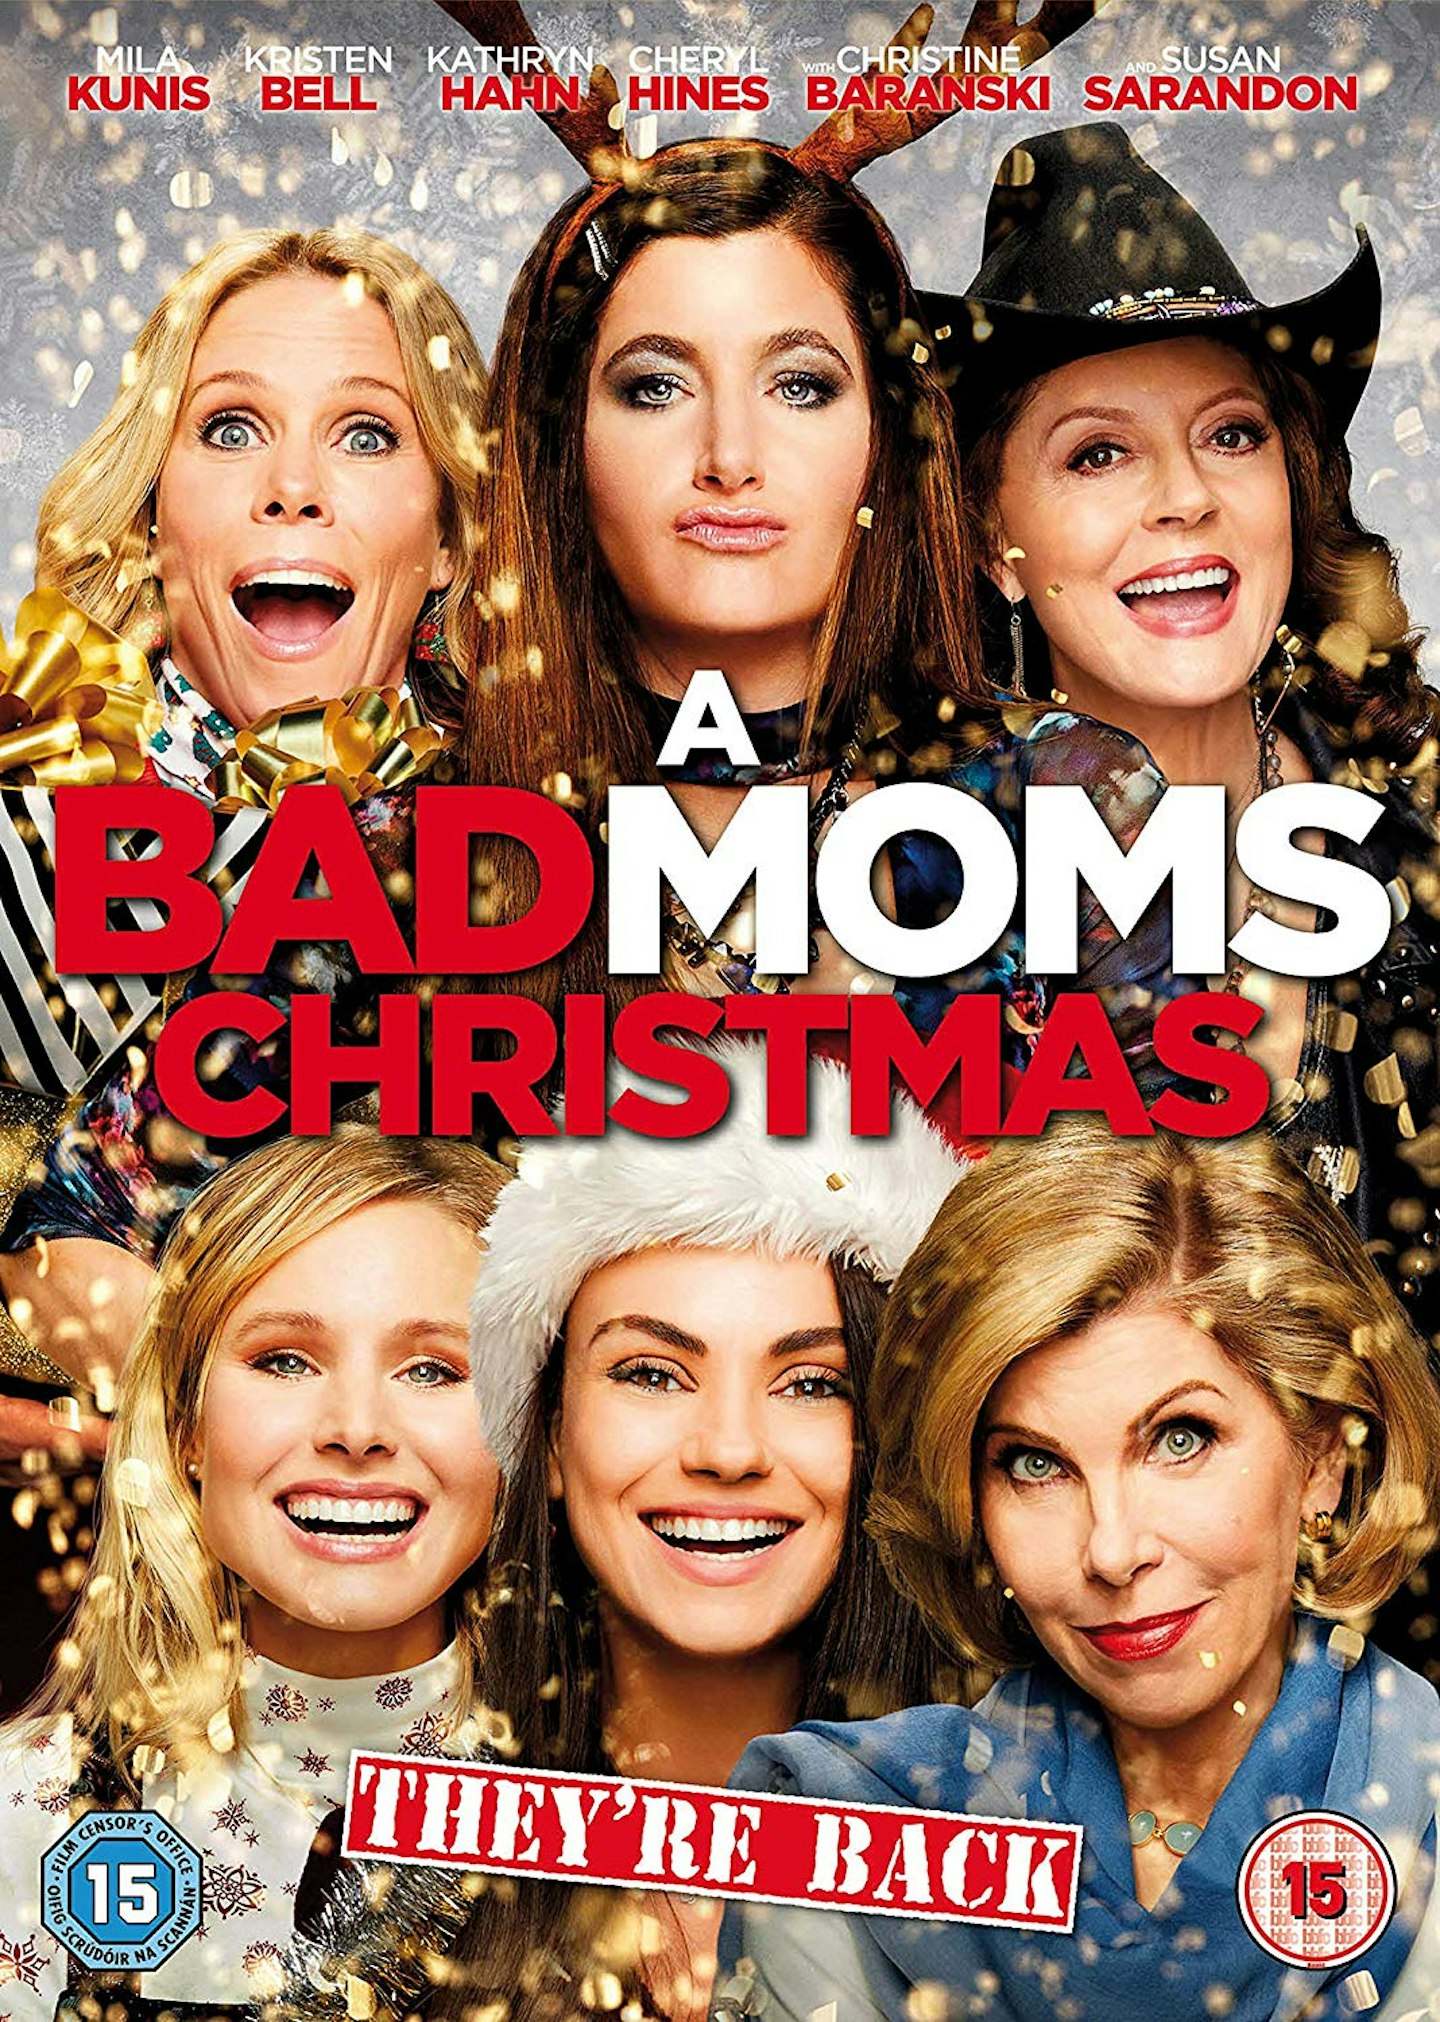 A Bad Moms Christmas DVD, 4.98